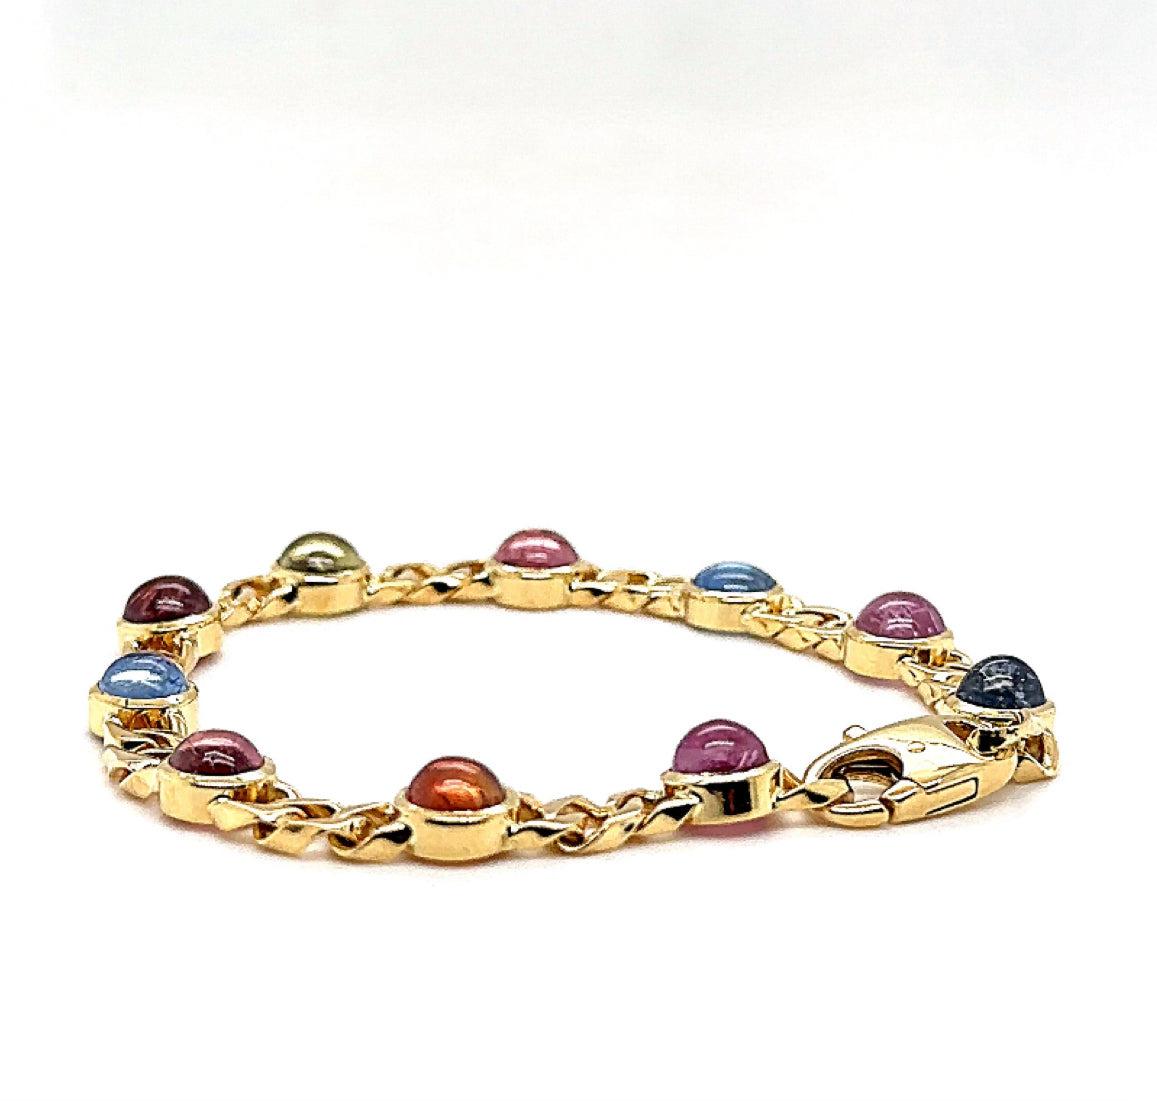 Unser exquisites Armband vereint den atemberaubenden Glanz von 18 Karat (750/-.) Gelbgold mit der faszinierenden Schönheit von buntfarbigen Saphiren. Jede der Saphire wird in einer eleganten Zargenfassung gehalten, wodurch ihre leuchtenden Farben